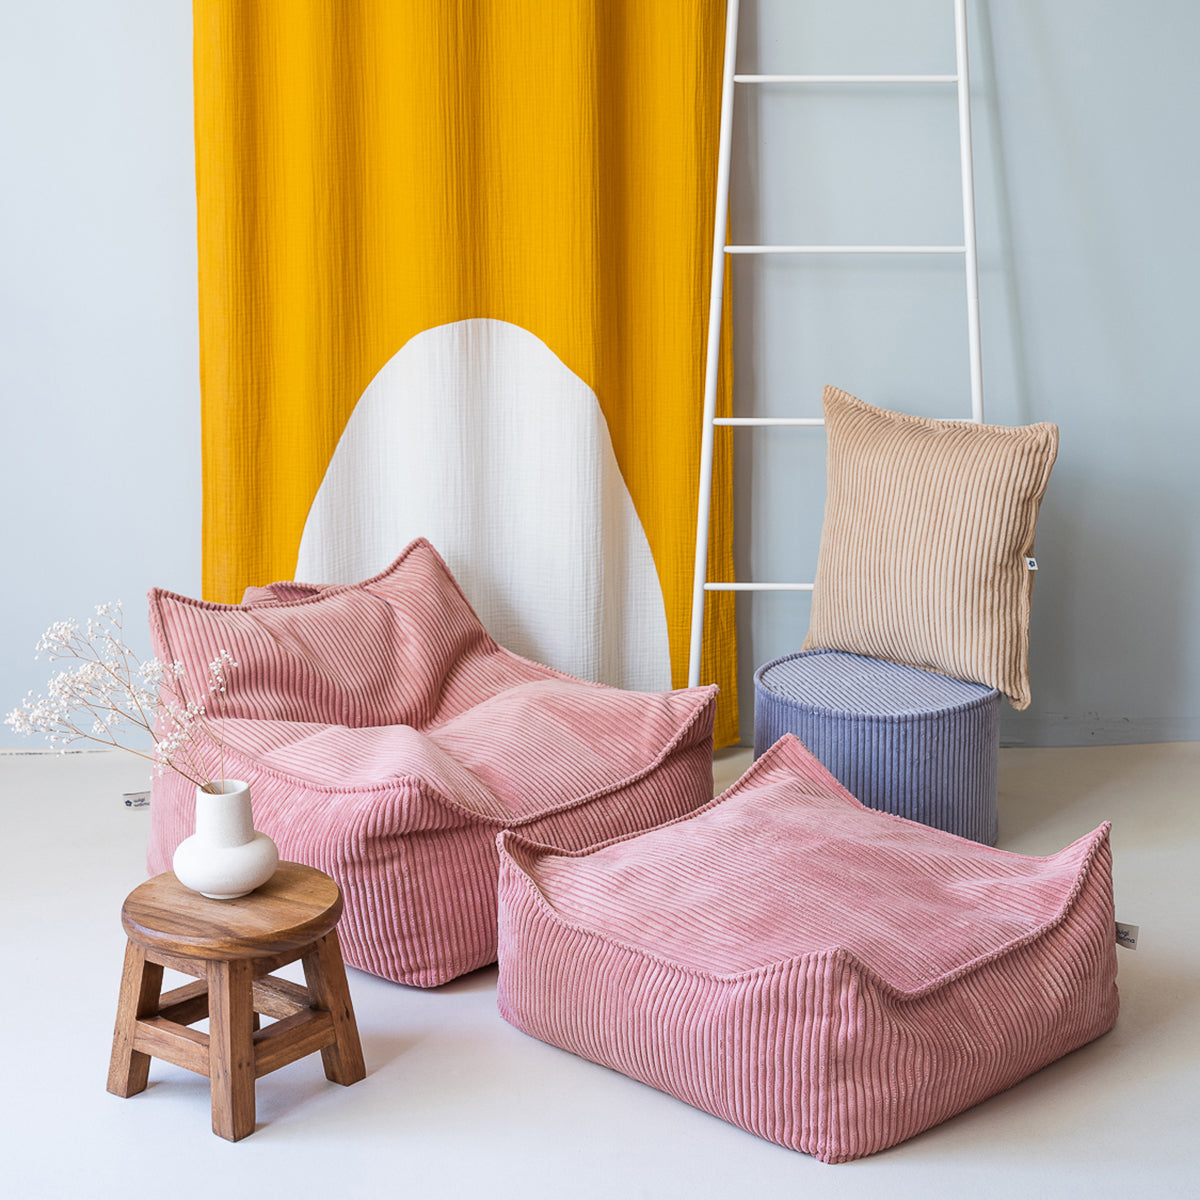 De Wigiwama ottoman poef vierkant pink mousse is een heerlijke poef voor in de woonkamer of de slaapkamer van je kindje. Je kindje kan hier lekker op ploffen met een boekje, voor de tv of wanneer er visite is. VanZus.